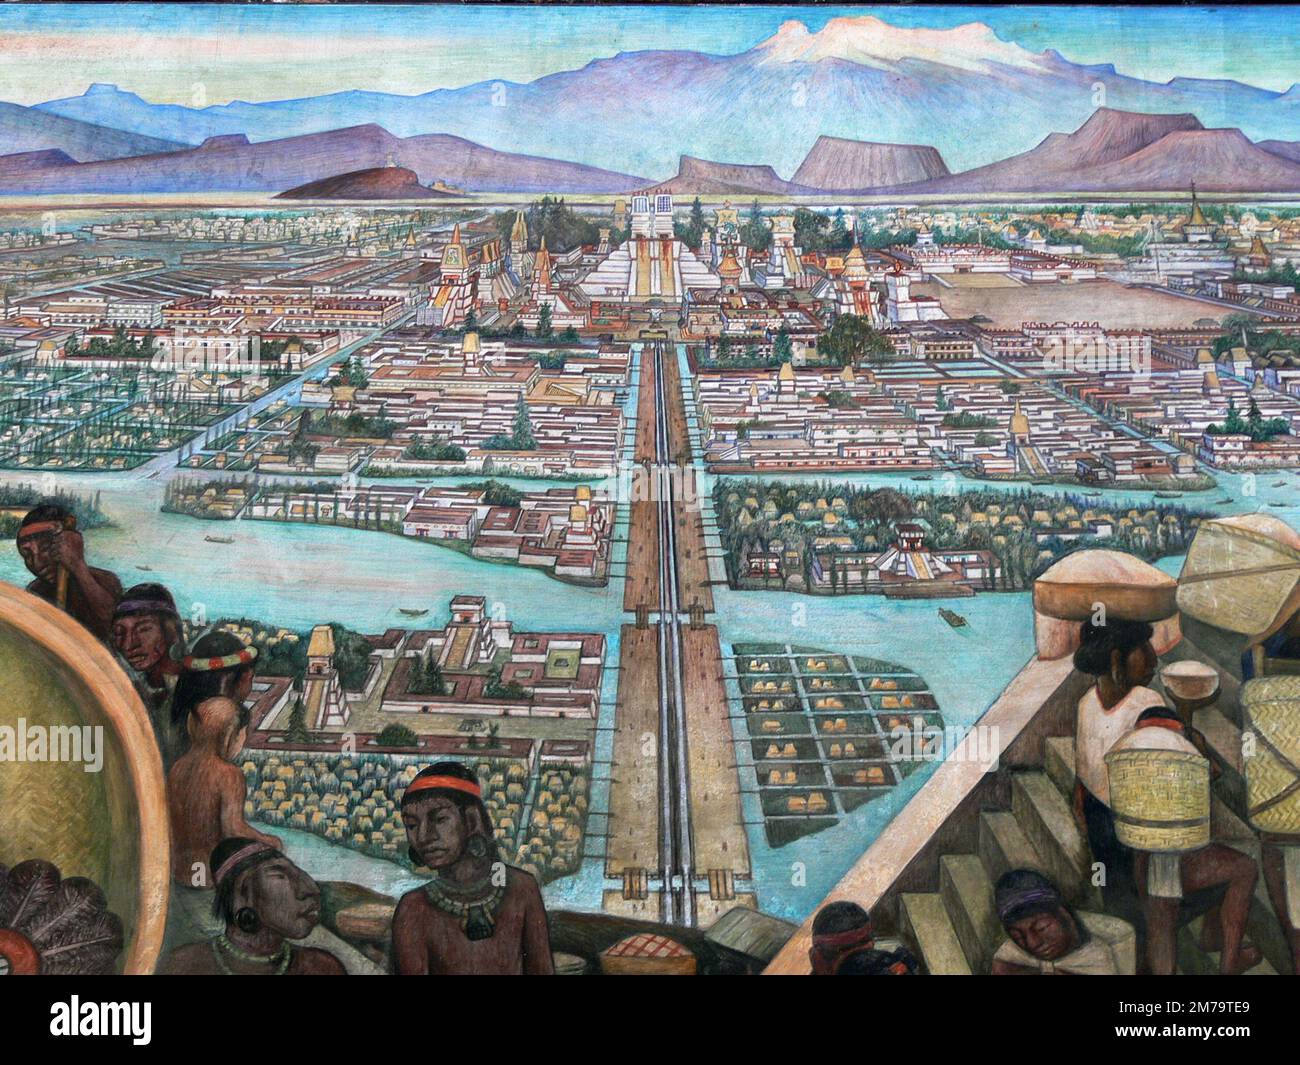 Mural de la ciudad azteca de Tenochtitlan, pintura de Diego Rivera Foto de stock